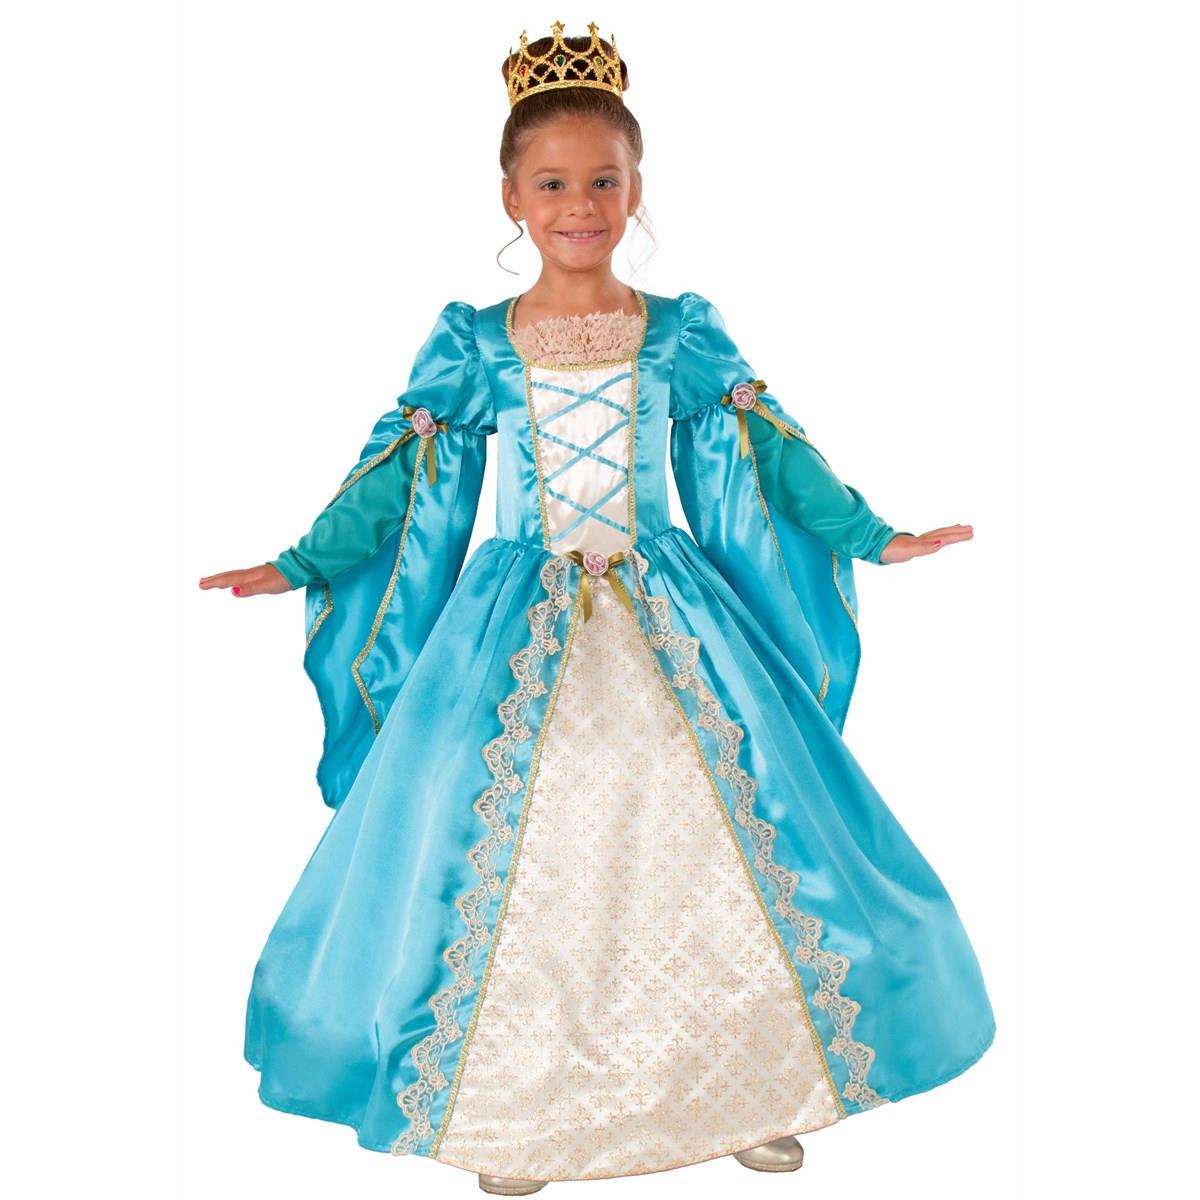 271581 Renaissance Queen Child Costume - Large